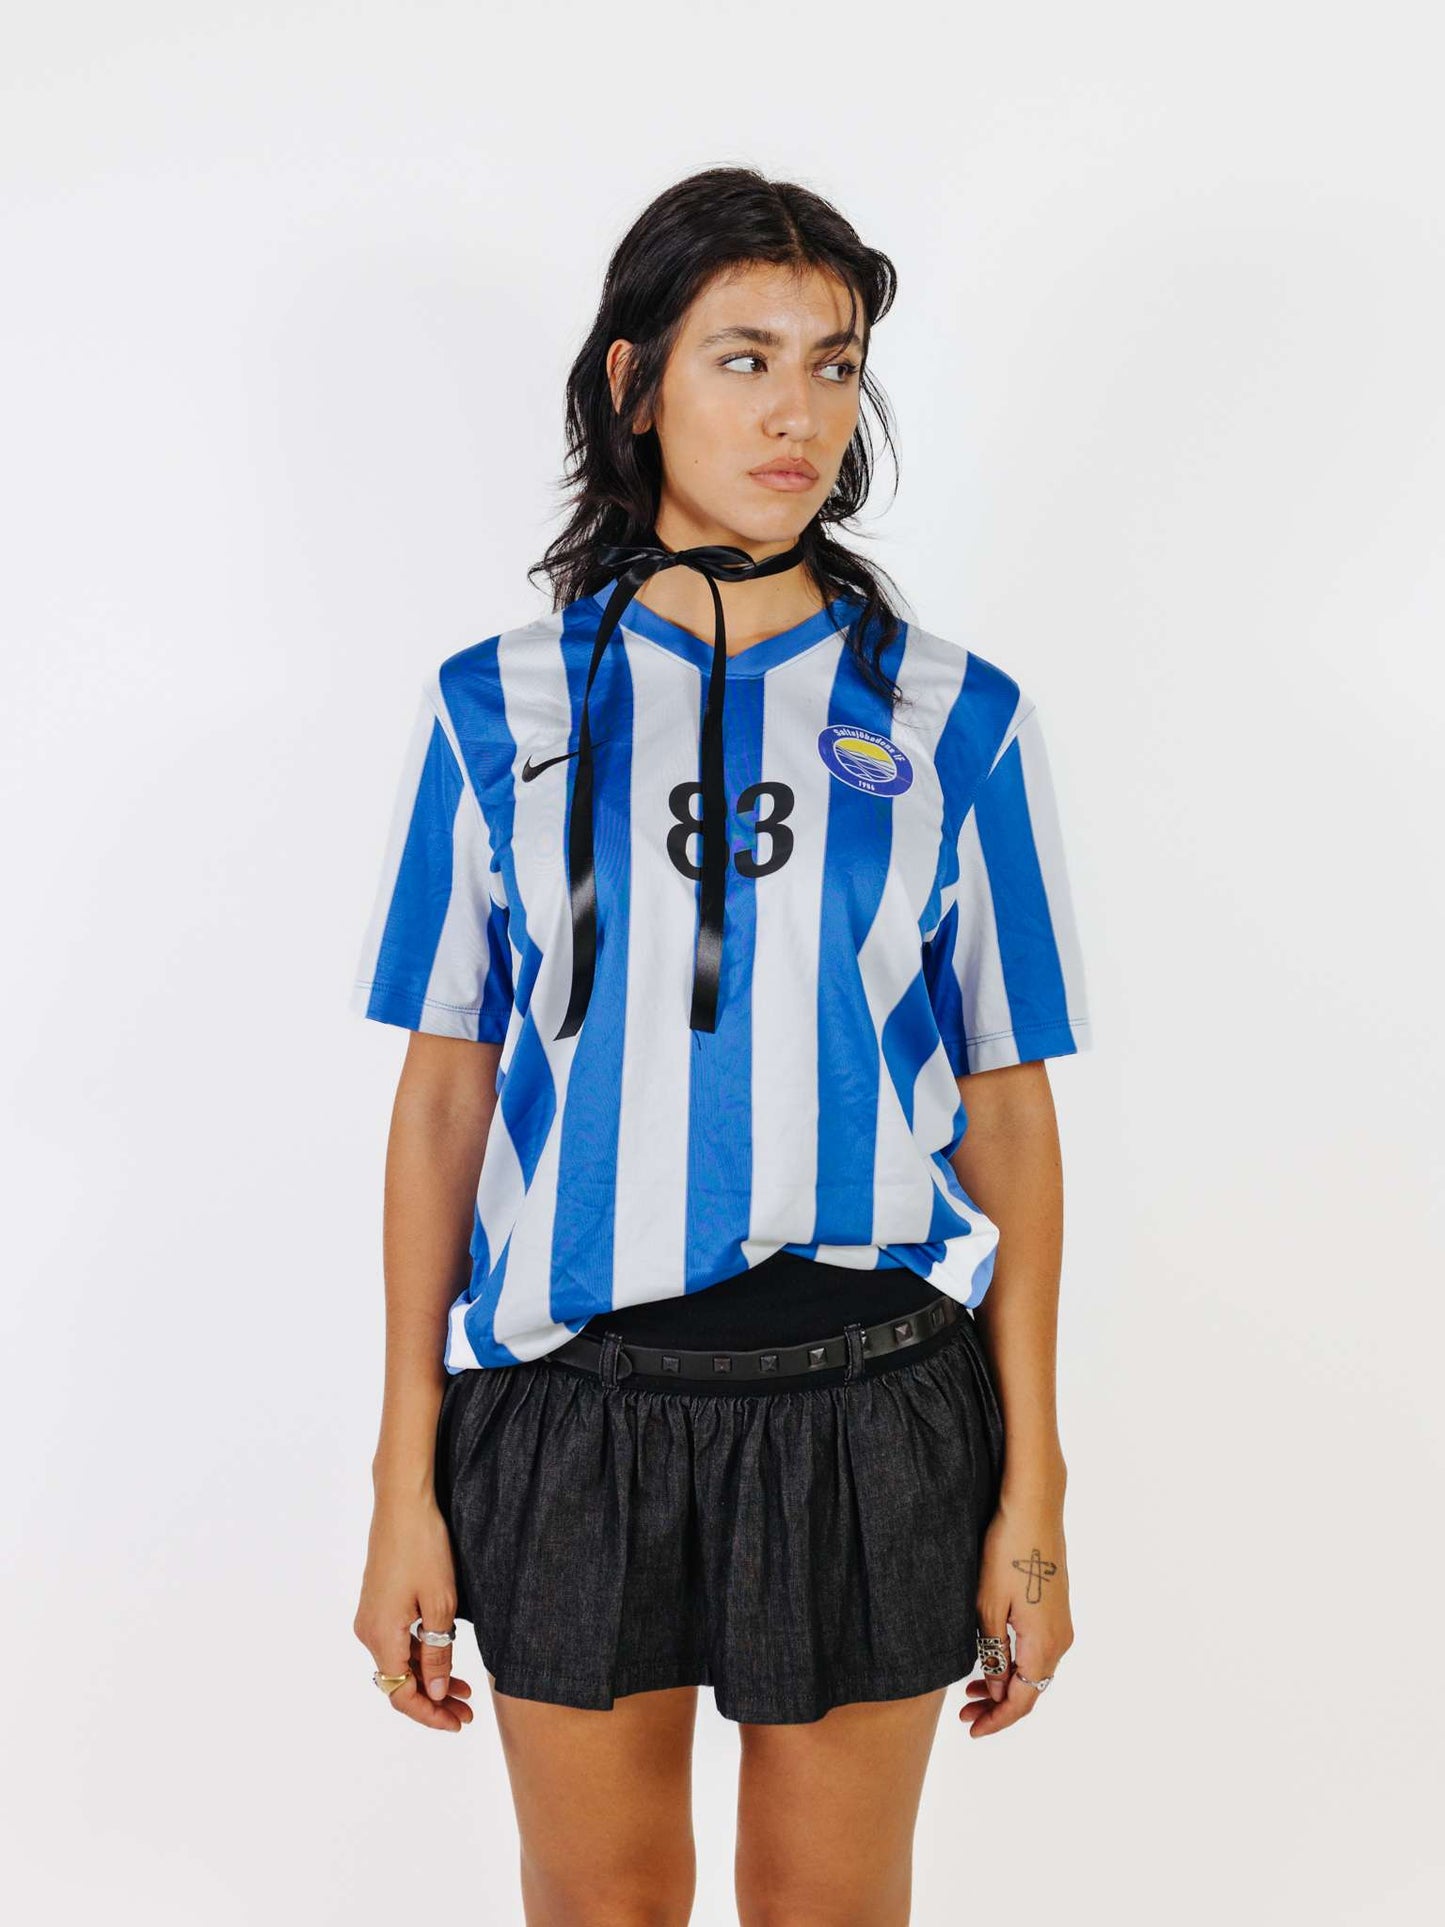 Camiseta Vintage Blokette De Nike A Rayas De Futbol Sueca Años 2000